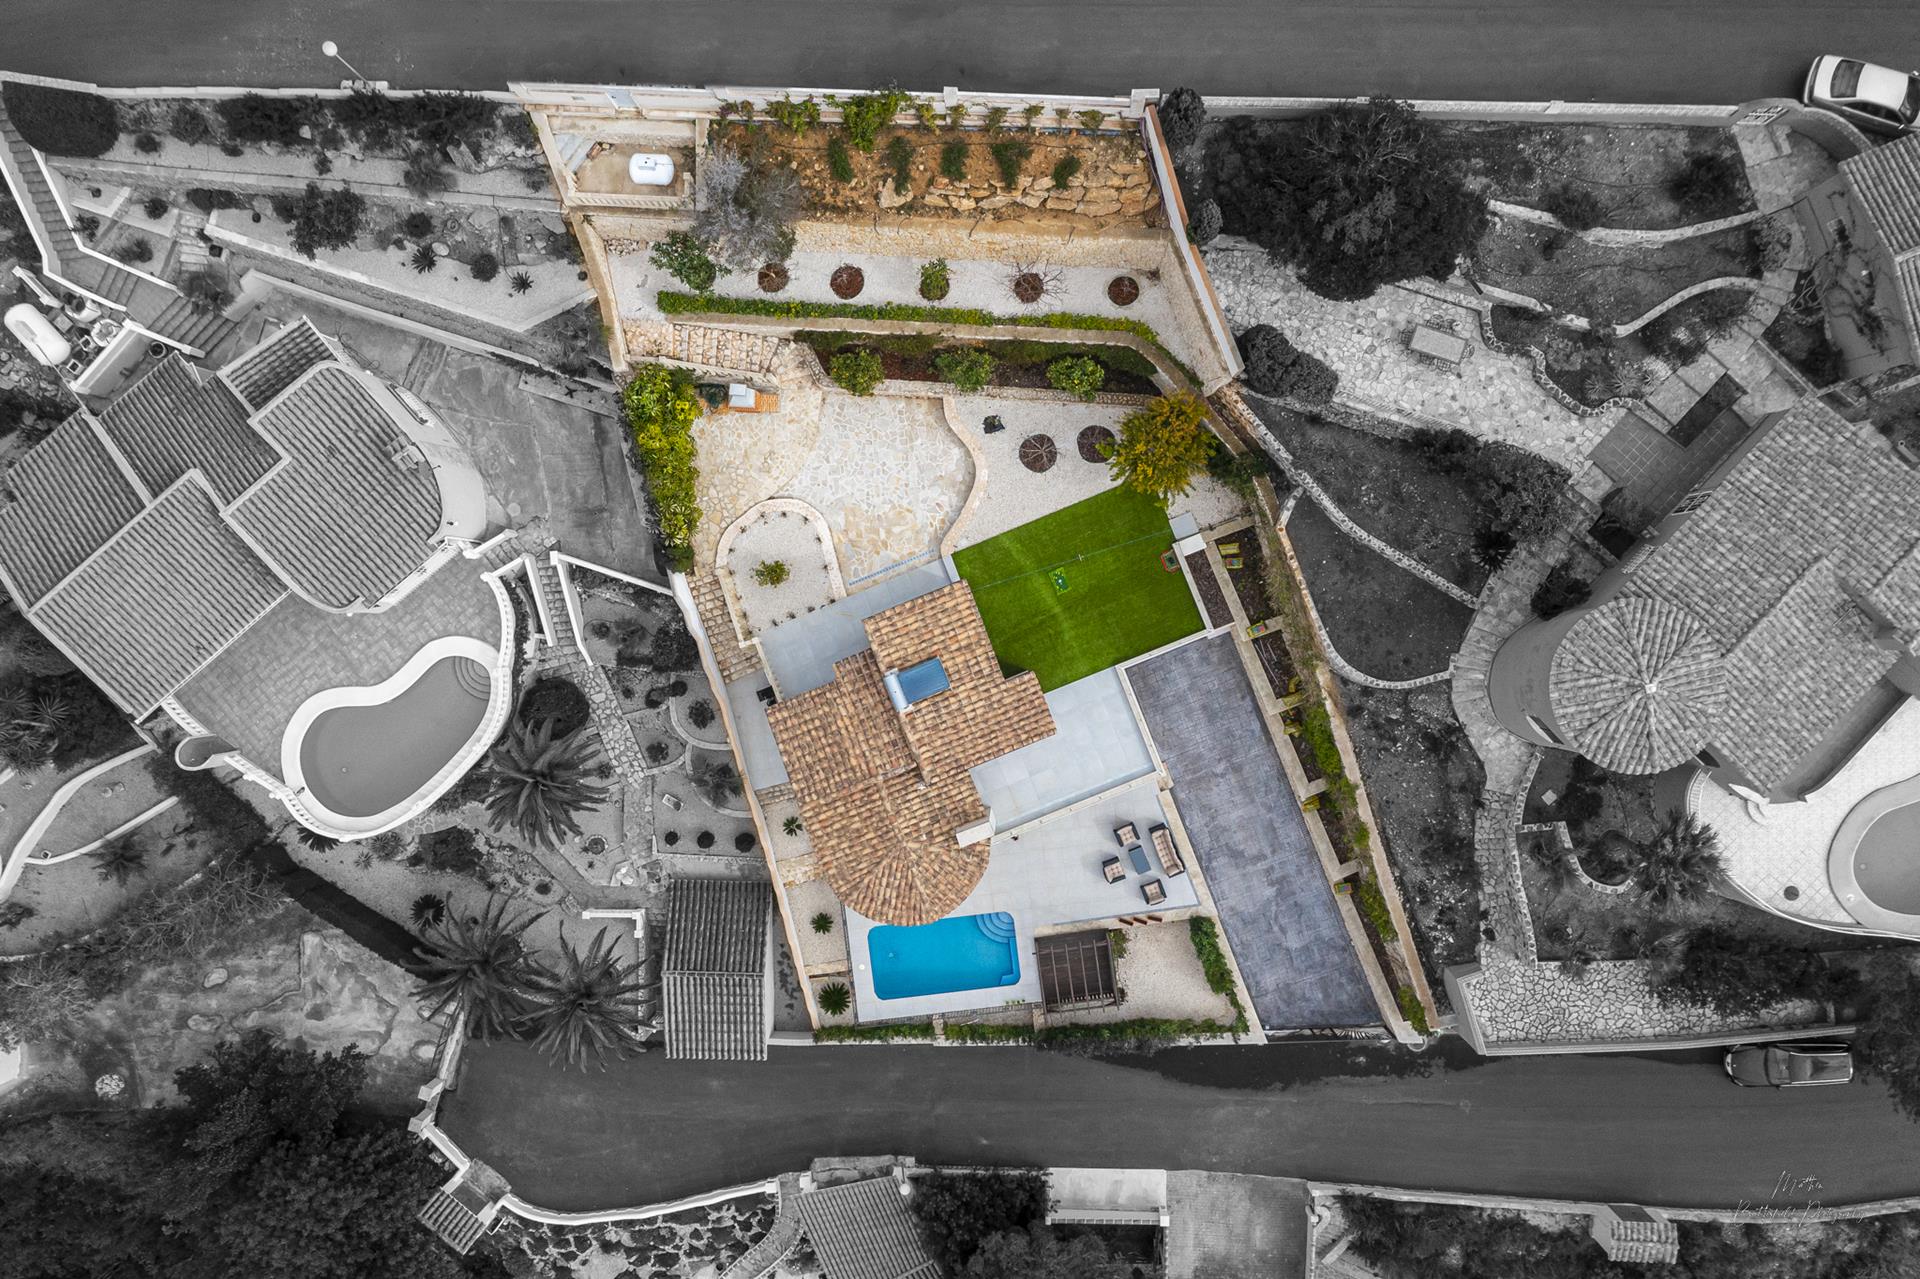 Villa reformada con piscina privada y garaje